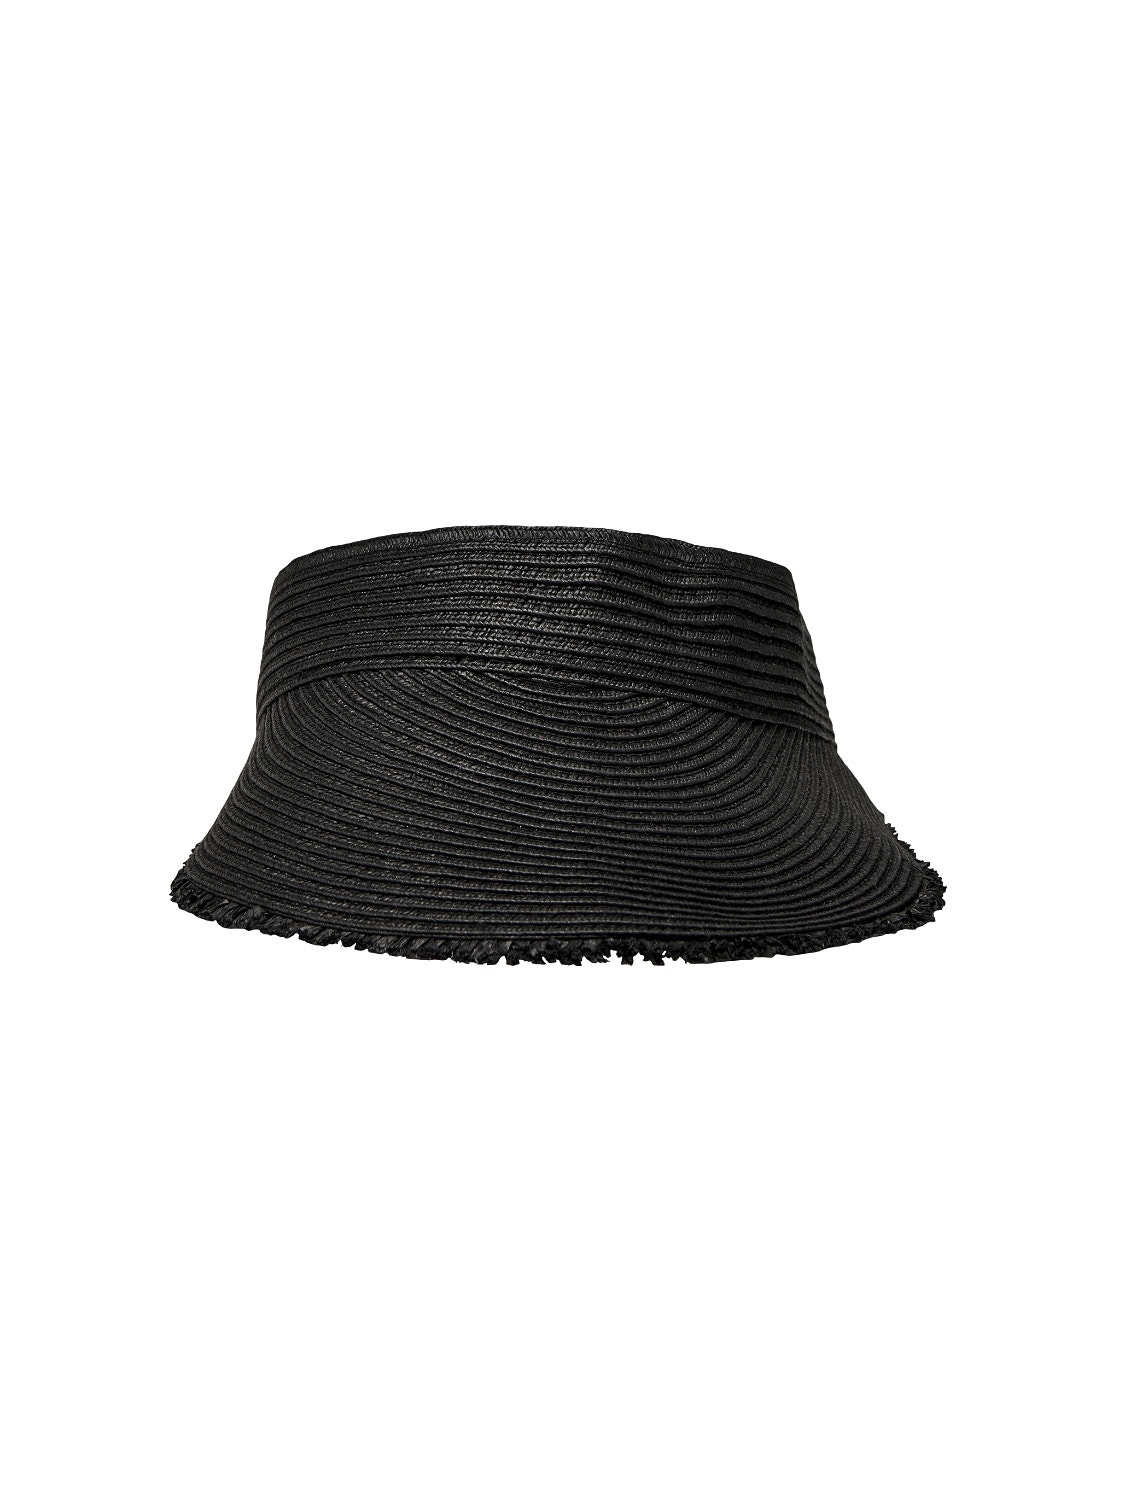 ONLY Solskjerm Caps -Black - 15263915